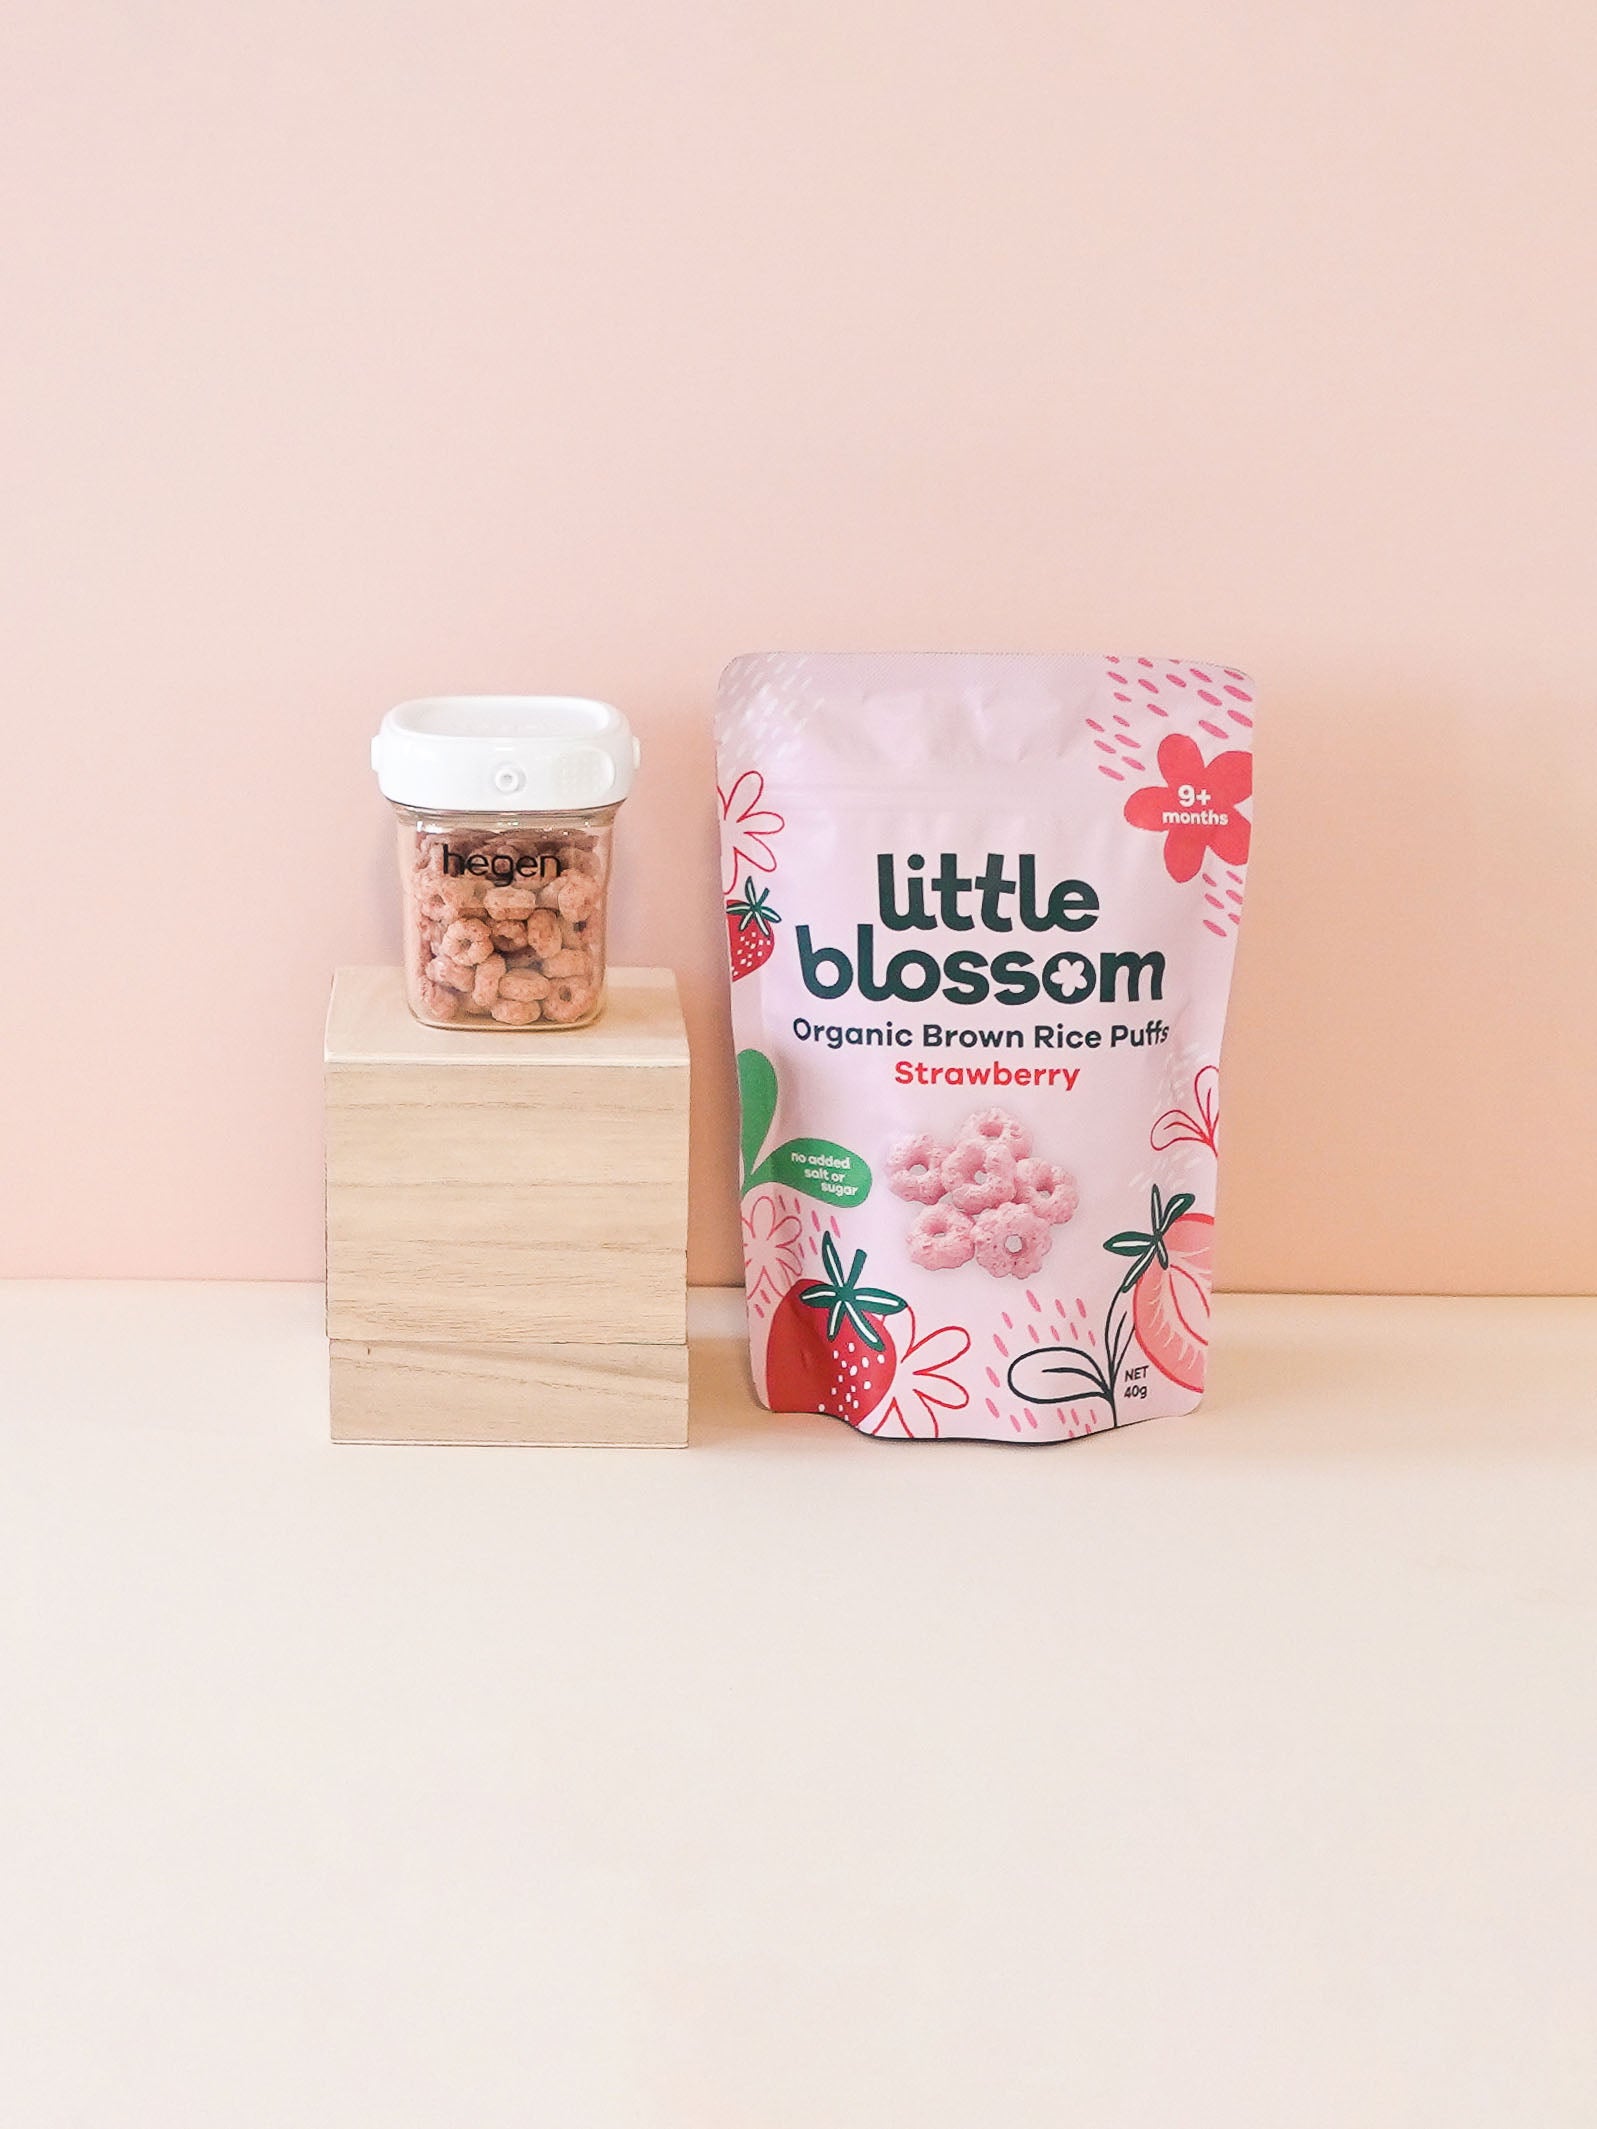 Little Blossom & Hegen Gift Set